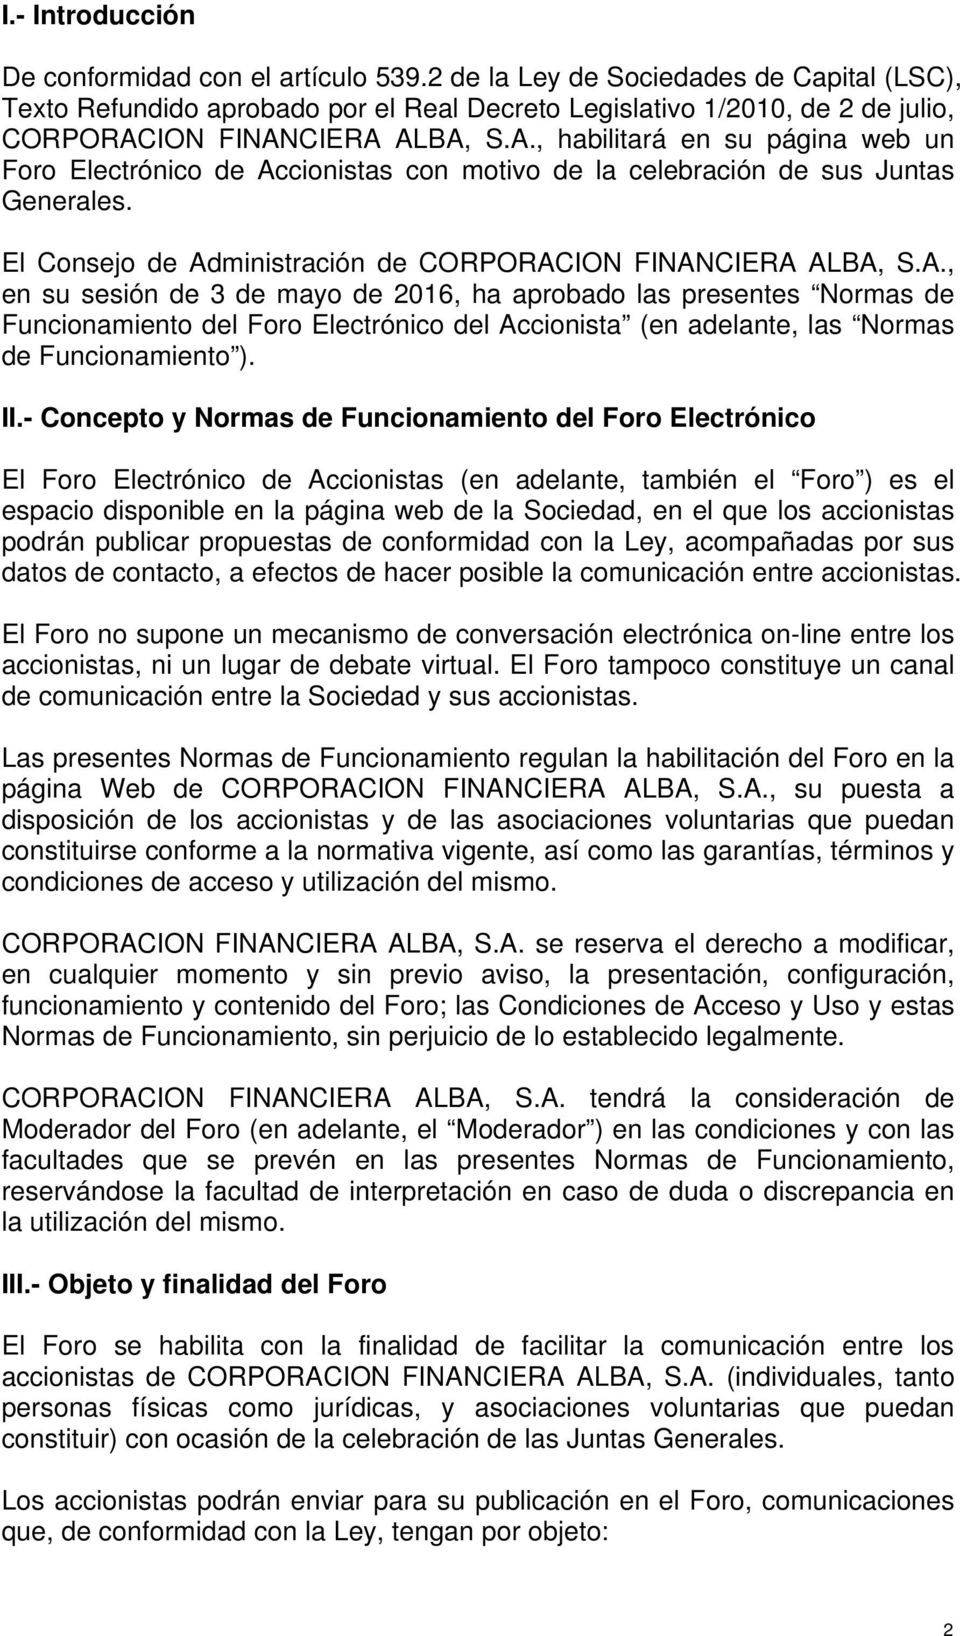 ION FINANCIERA ALBA, S.A., habilitará en su página web un Foro Electrónico de Accionistas con motivo de la celebración de sus Juntas Generales.